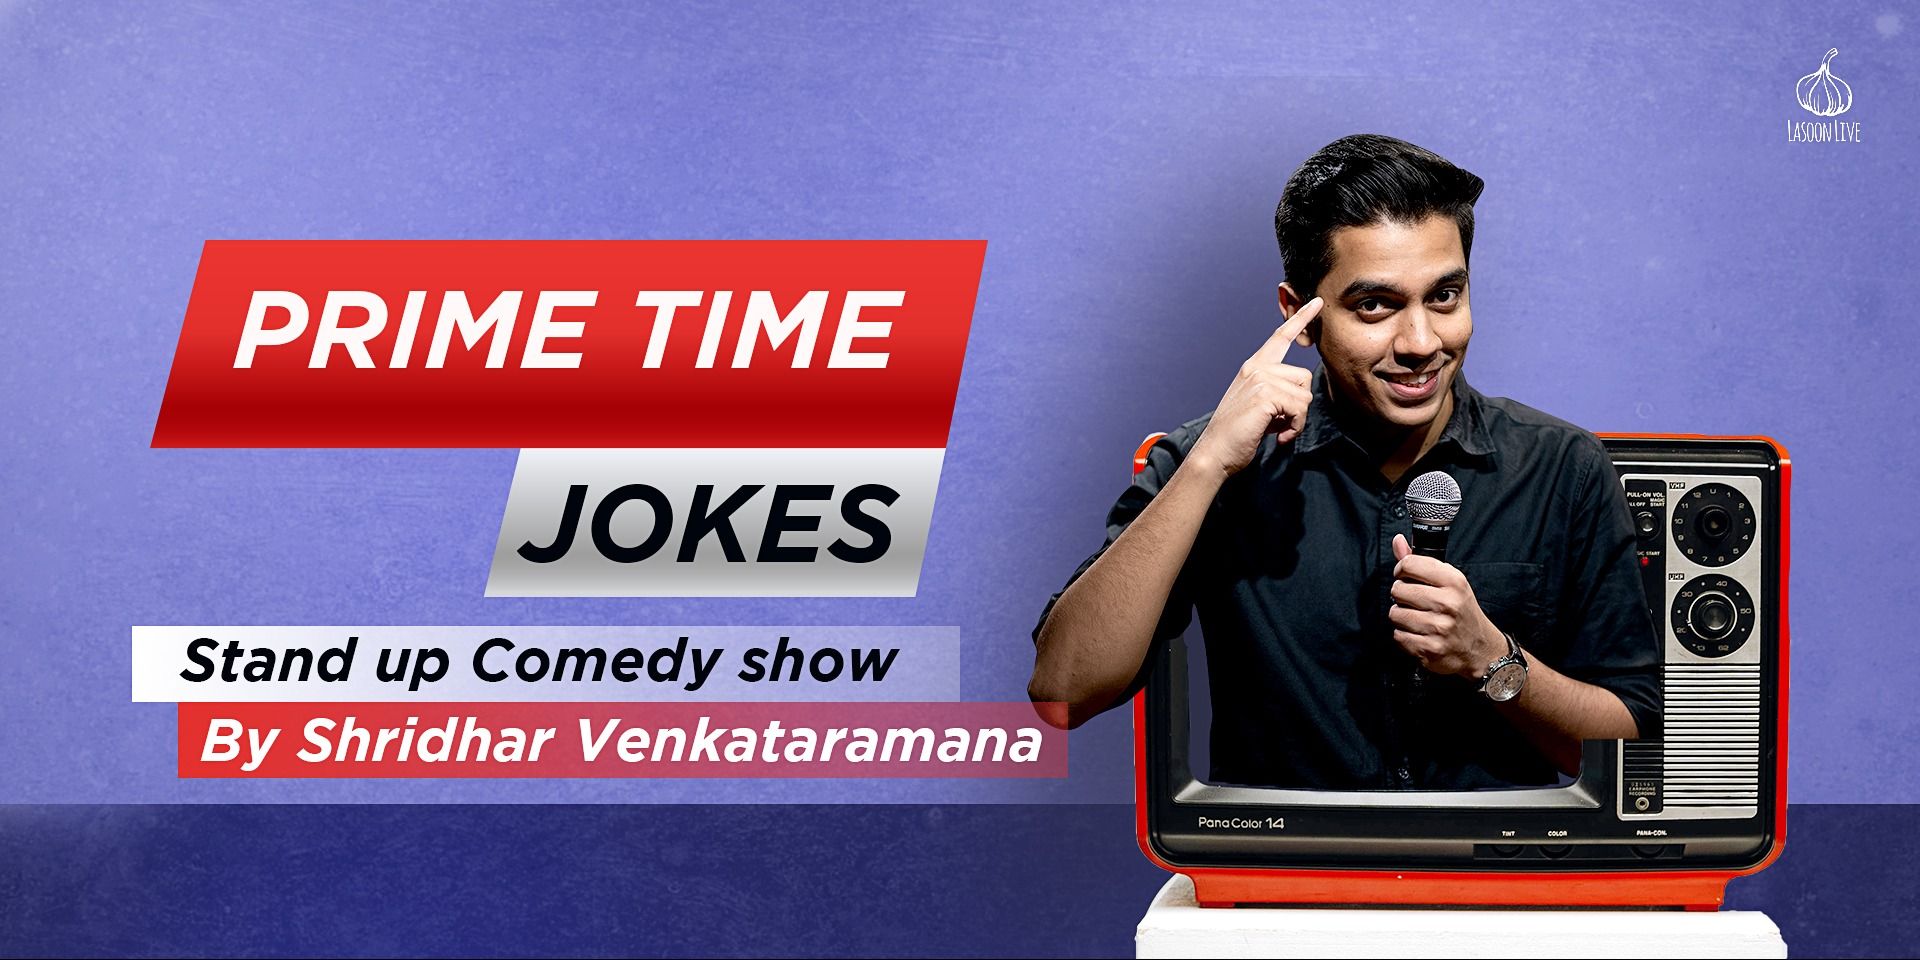 Prime Time Jokes – Shridhar Venkataramana (Comedy) in Delhi